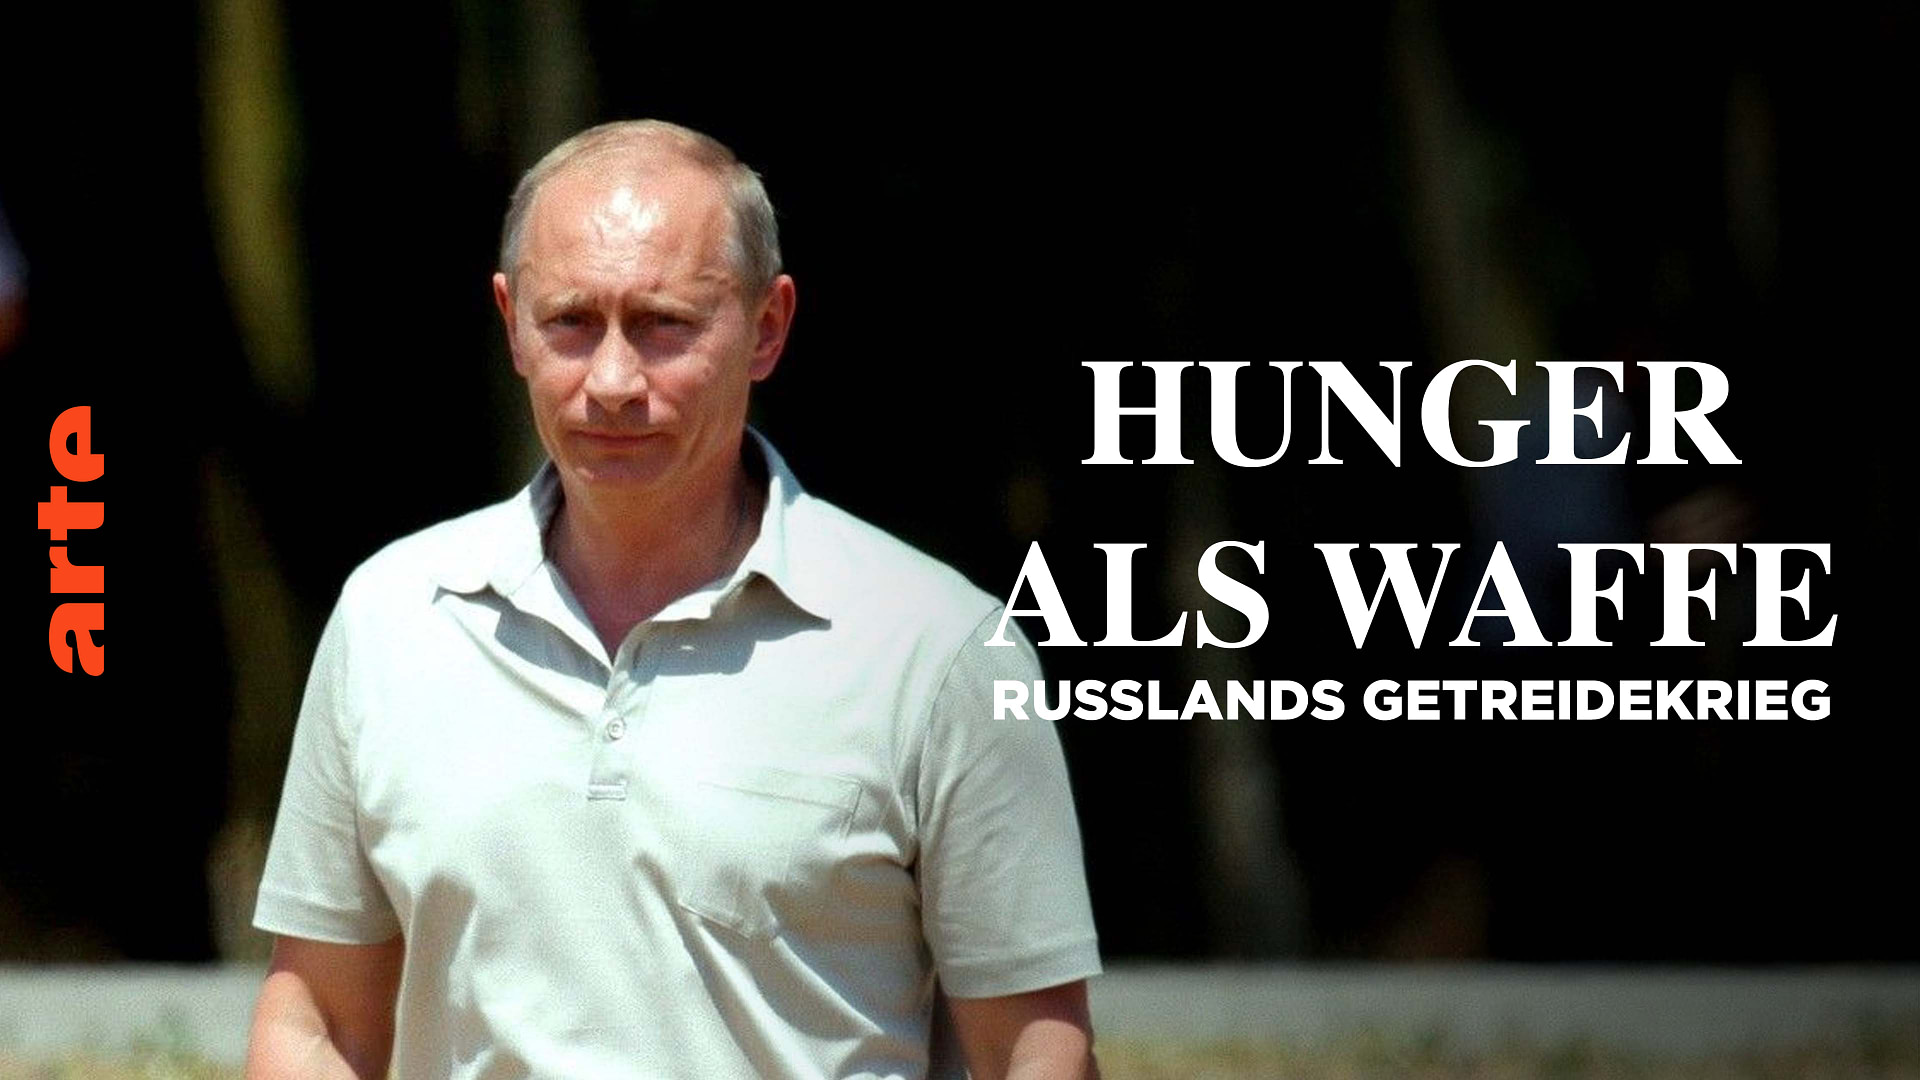 Hunger als Waffe - Russlands Getreidekrieg